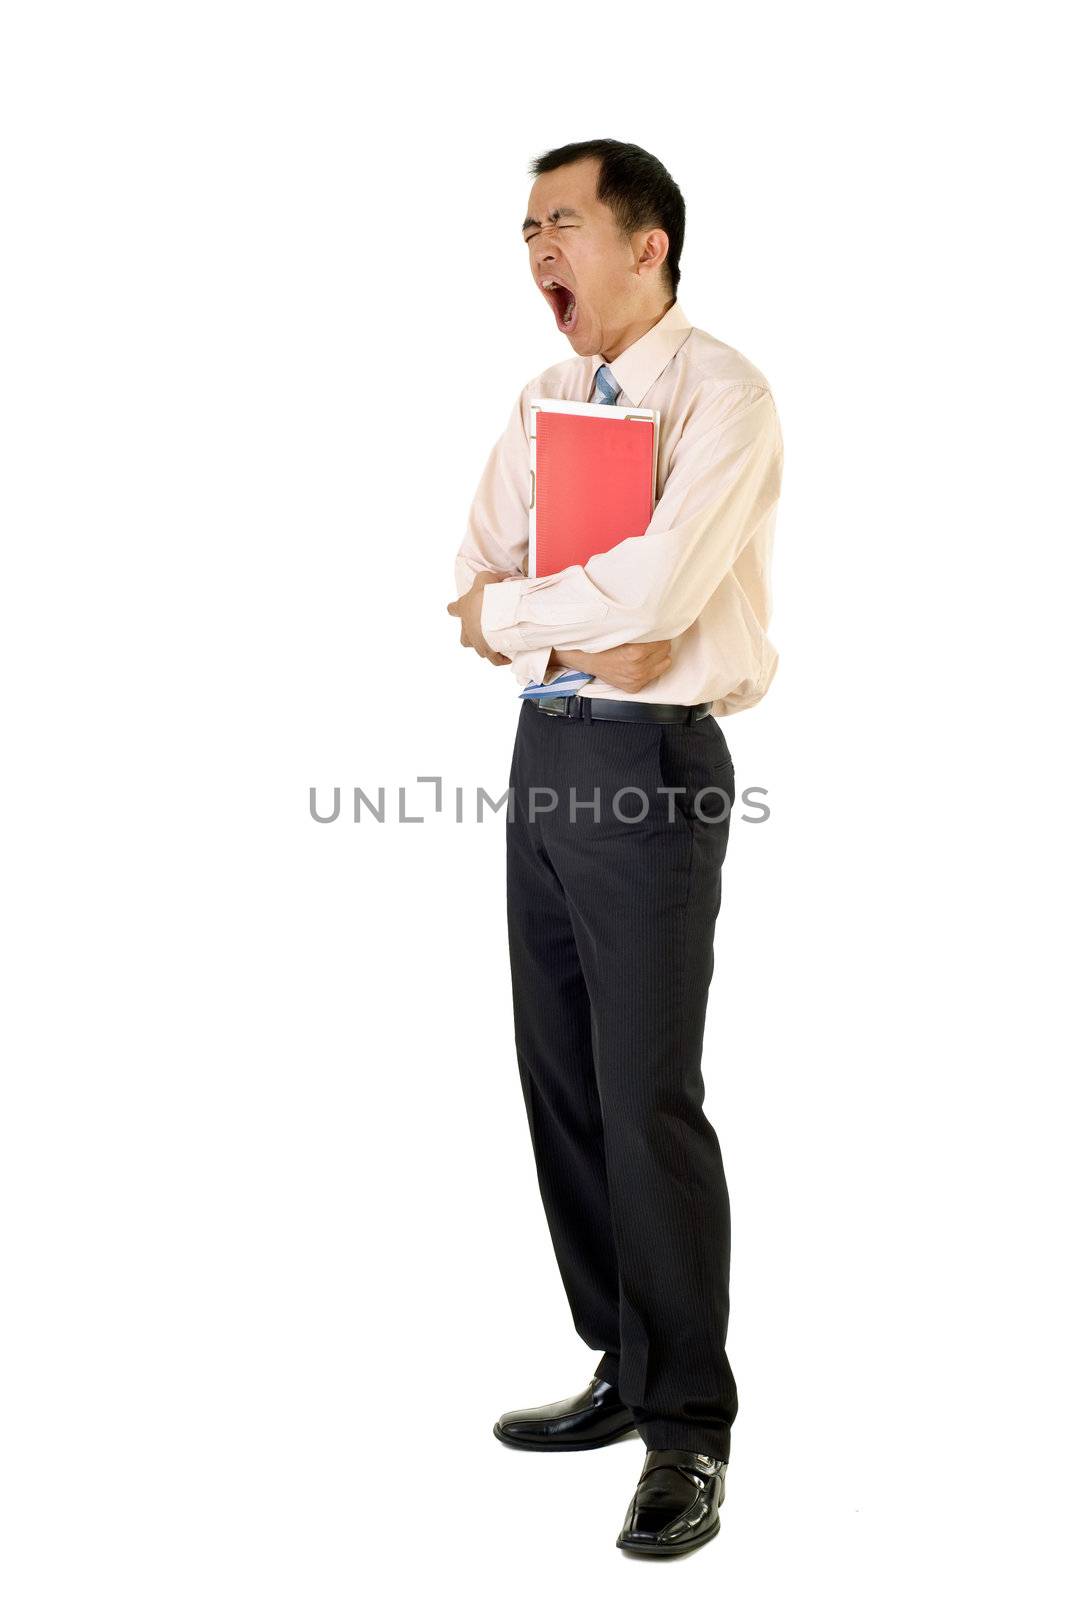 Tired businessman holding folders yawning on white background.